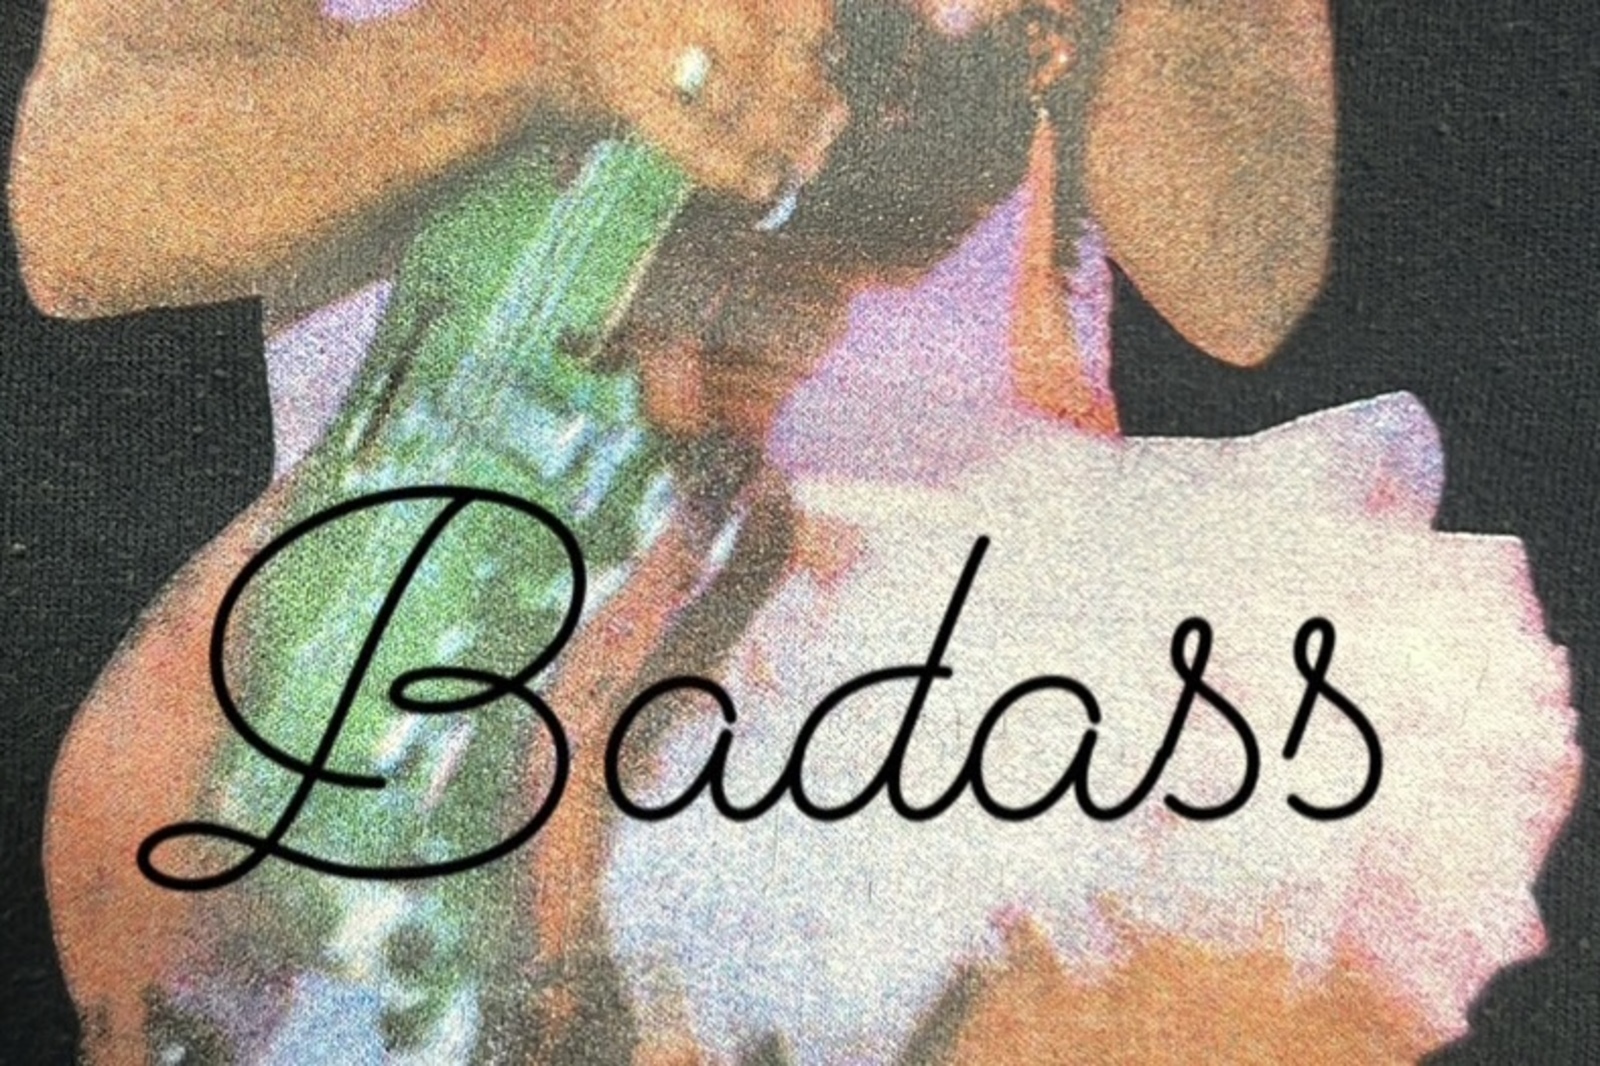 Badass midnight party 7/1